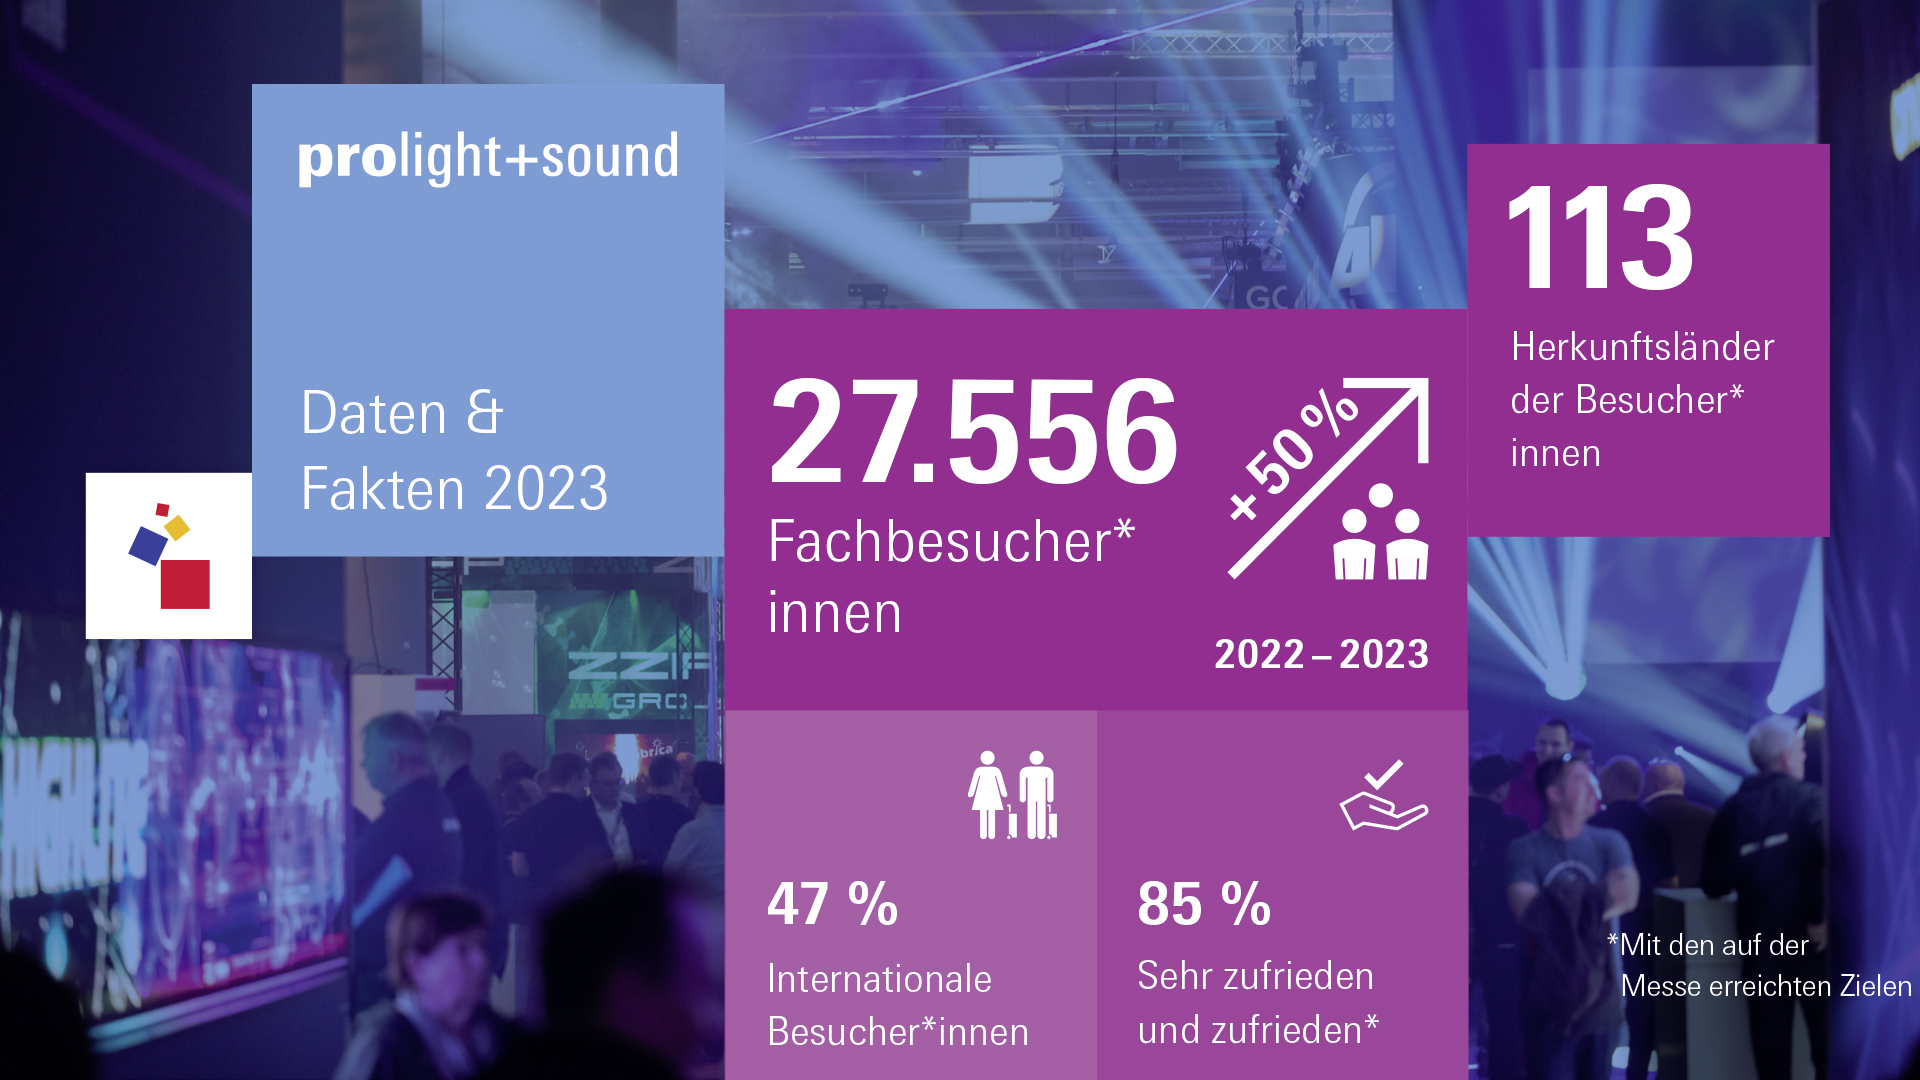 Zahlen und Fakten Prolight + sound 2023